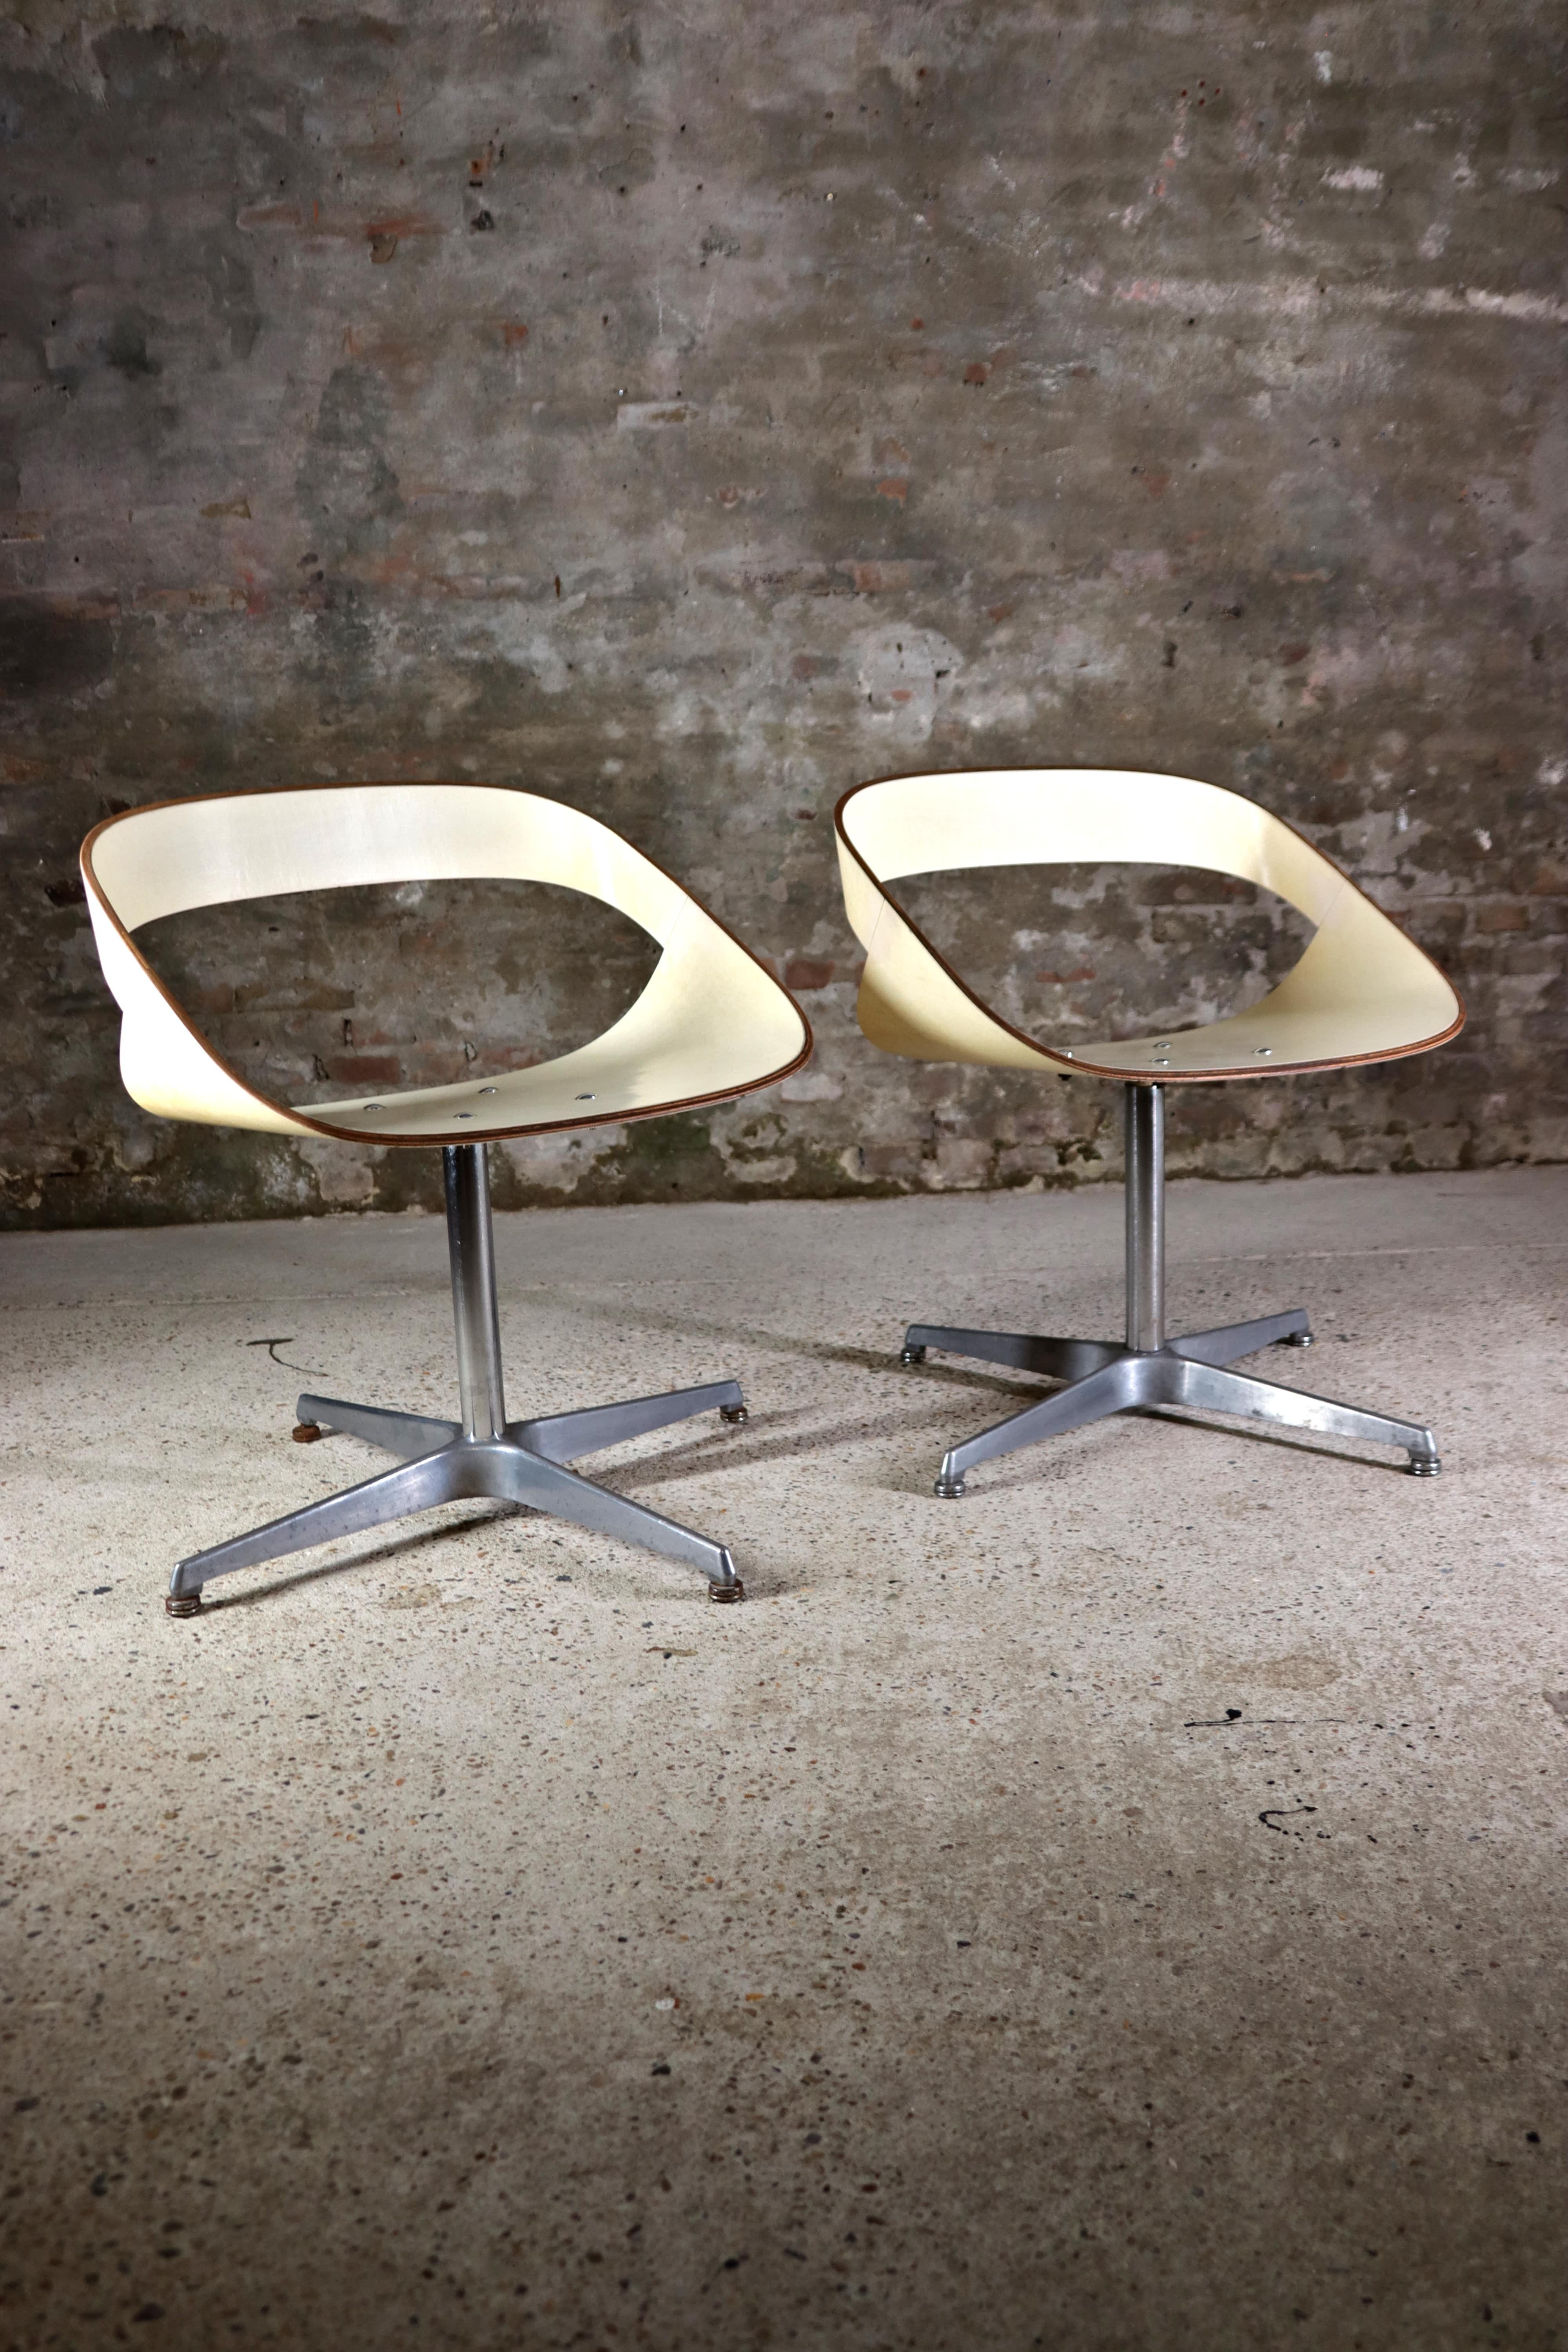 Vous ne verrez pas souvent ce type de chaises. Ces chaises pivotantes RCA de la série 130, conçues par Geoffrey Harcourt en 1961 et fabriquées par Artifort, sont extrêmement rares. Il a été conçu comme travail de fin d'études au Royal College of Art